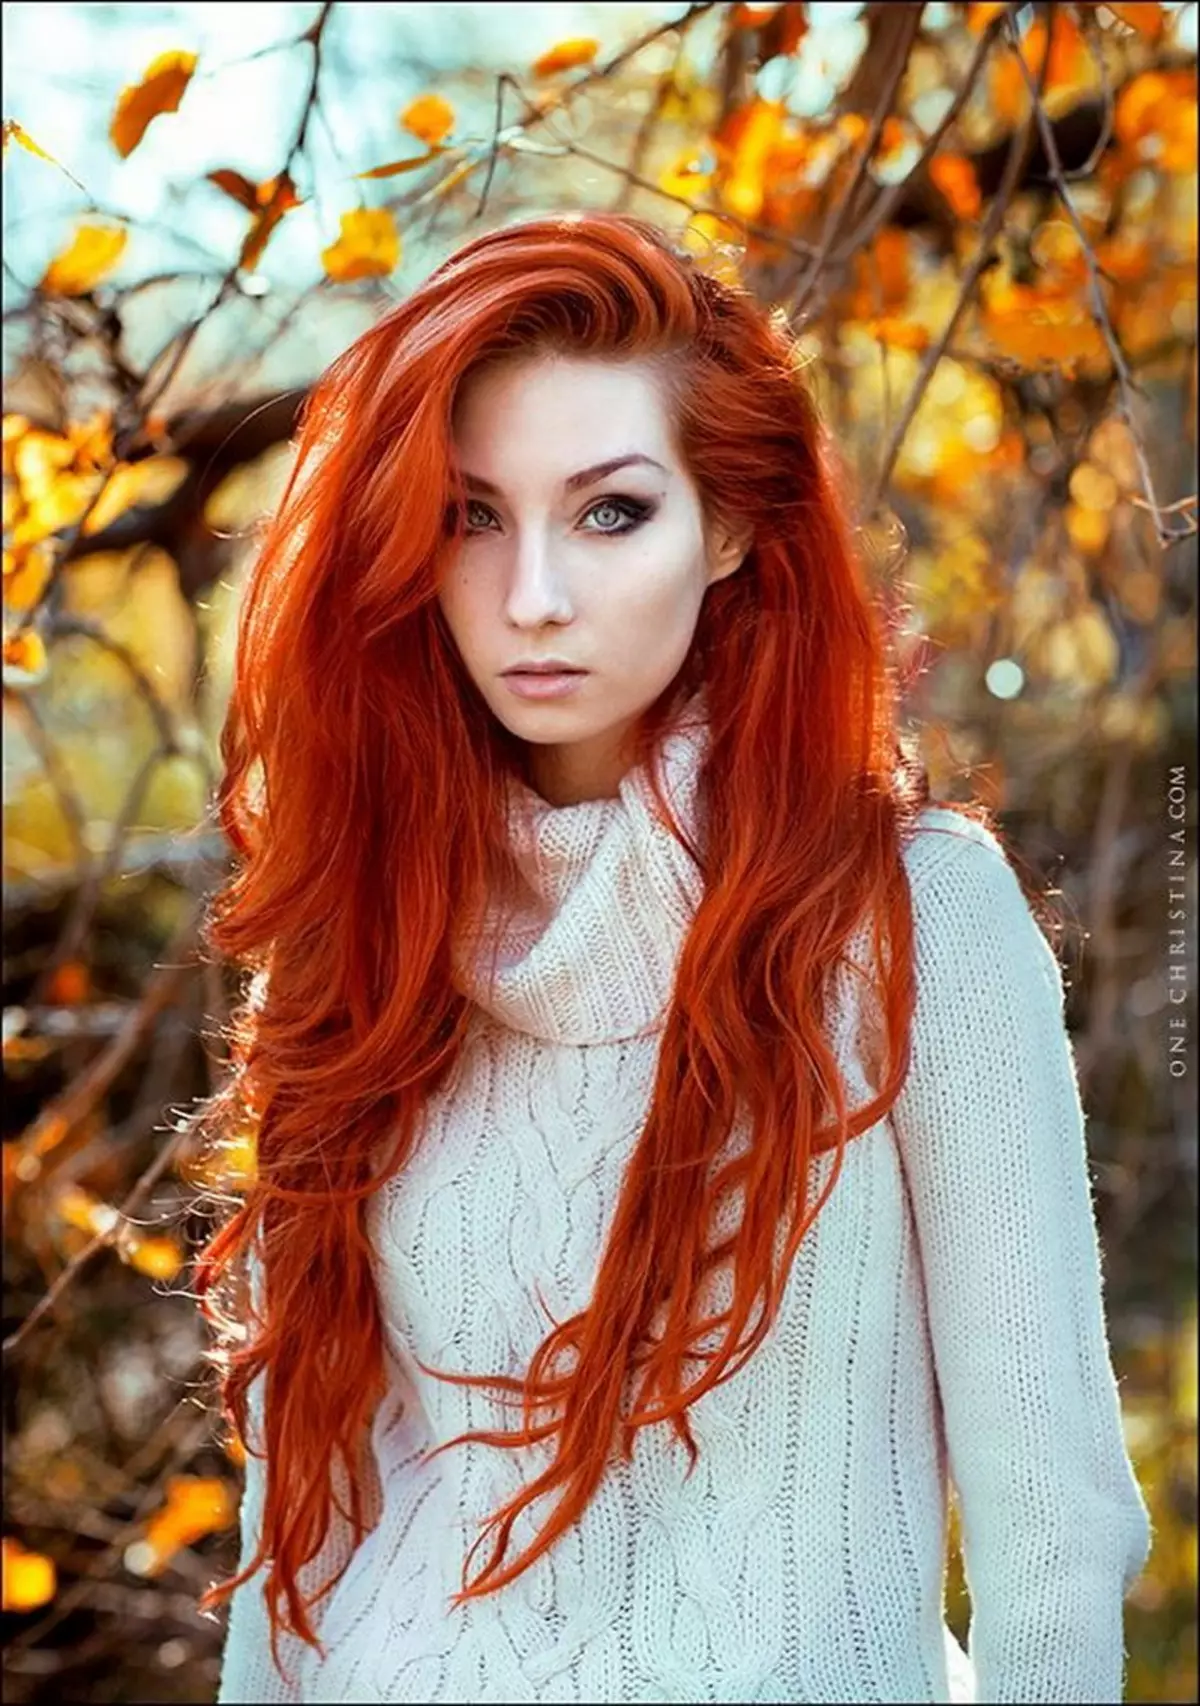 Ce culori sunt potrivite pentru părul roșu? 66 Fotografii Ce nuanțe merg la fete cu părul roșu cu Karium și Verzii? Combinații de culori adecvate în îmbrăcăminte 3591_11